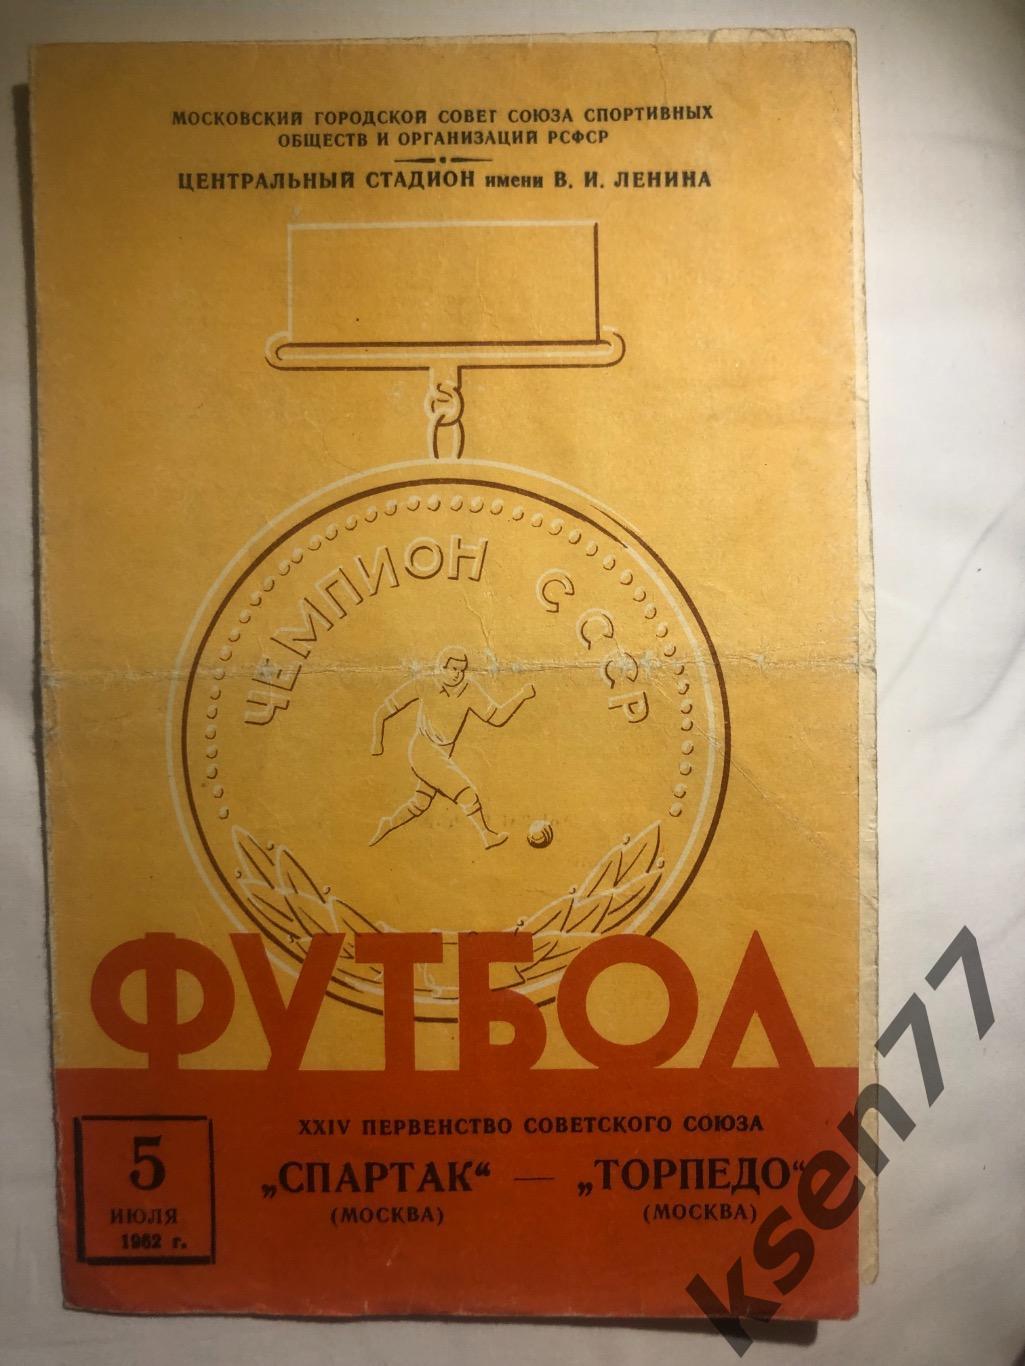 Спартак Москва - Торпедо Москва - 05.07.1962.